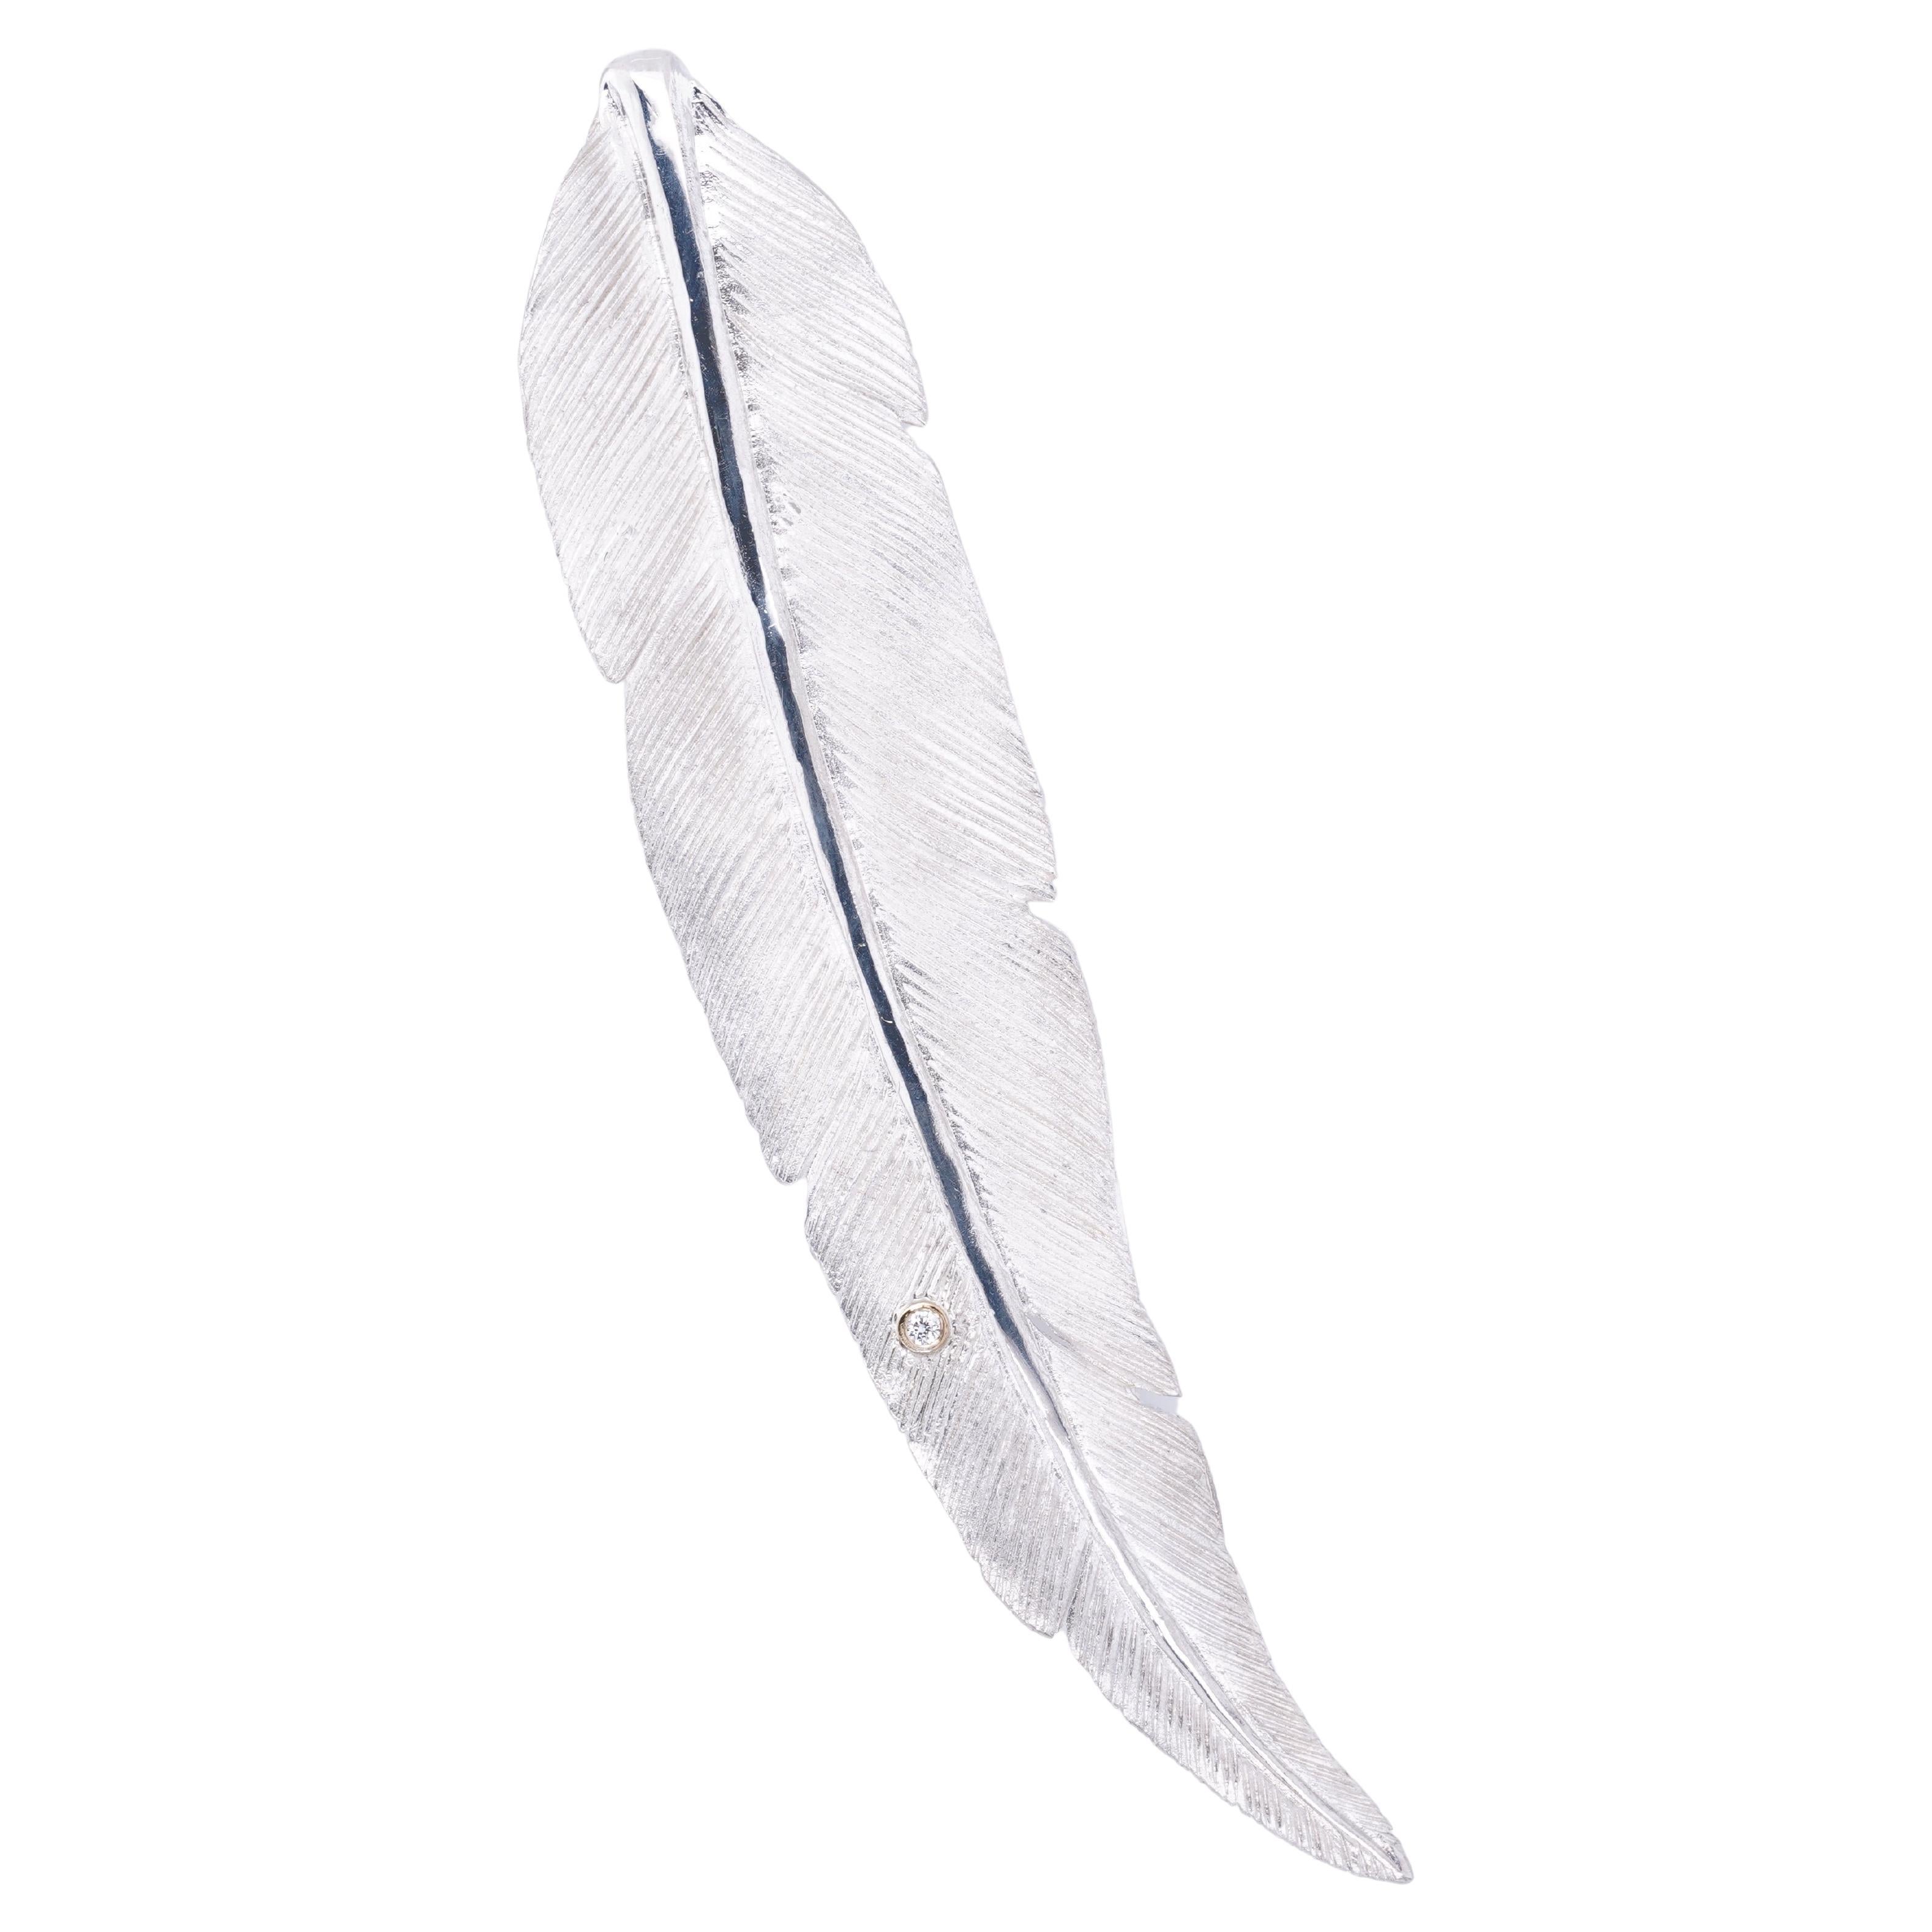 Grande broche plume d'oiseau détaillée en argent sterling avec des diamants par Ashley Childs

Cette plume a été sculptée à l'origine par 